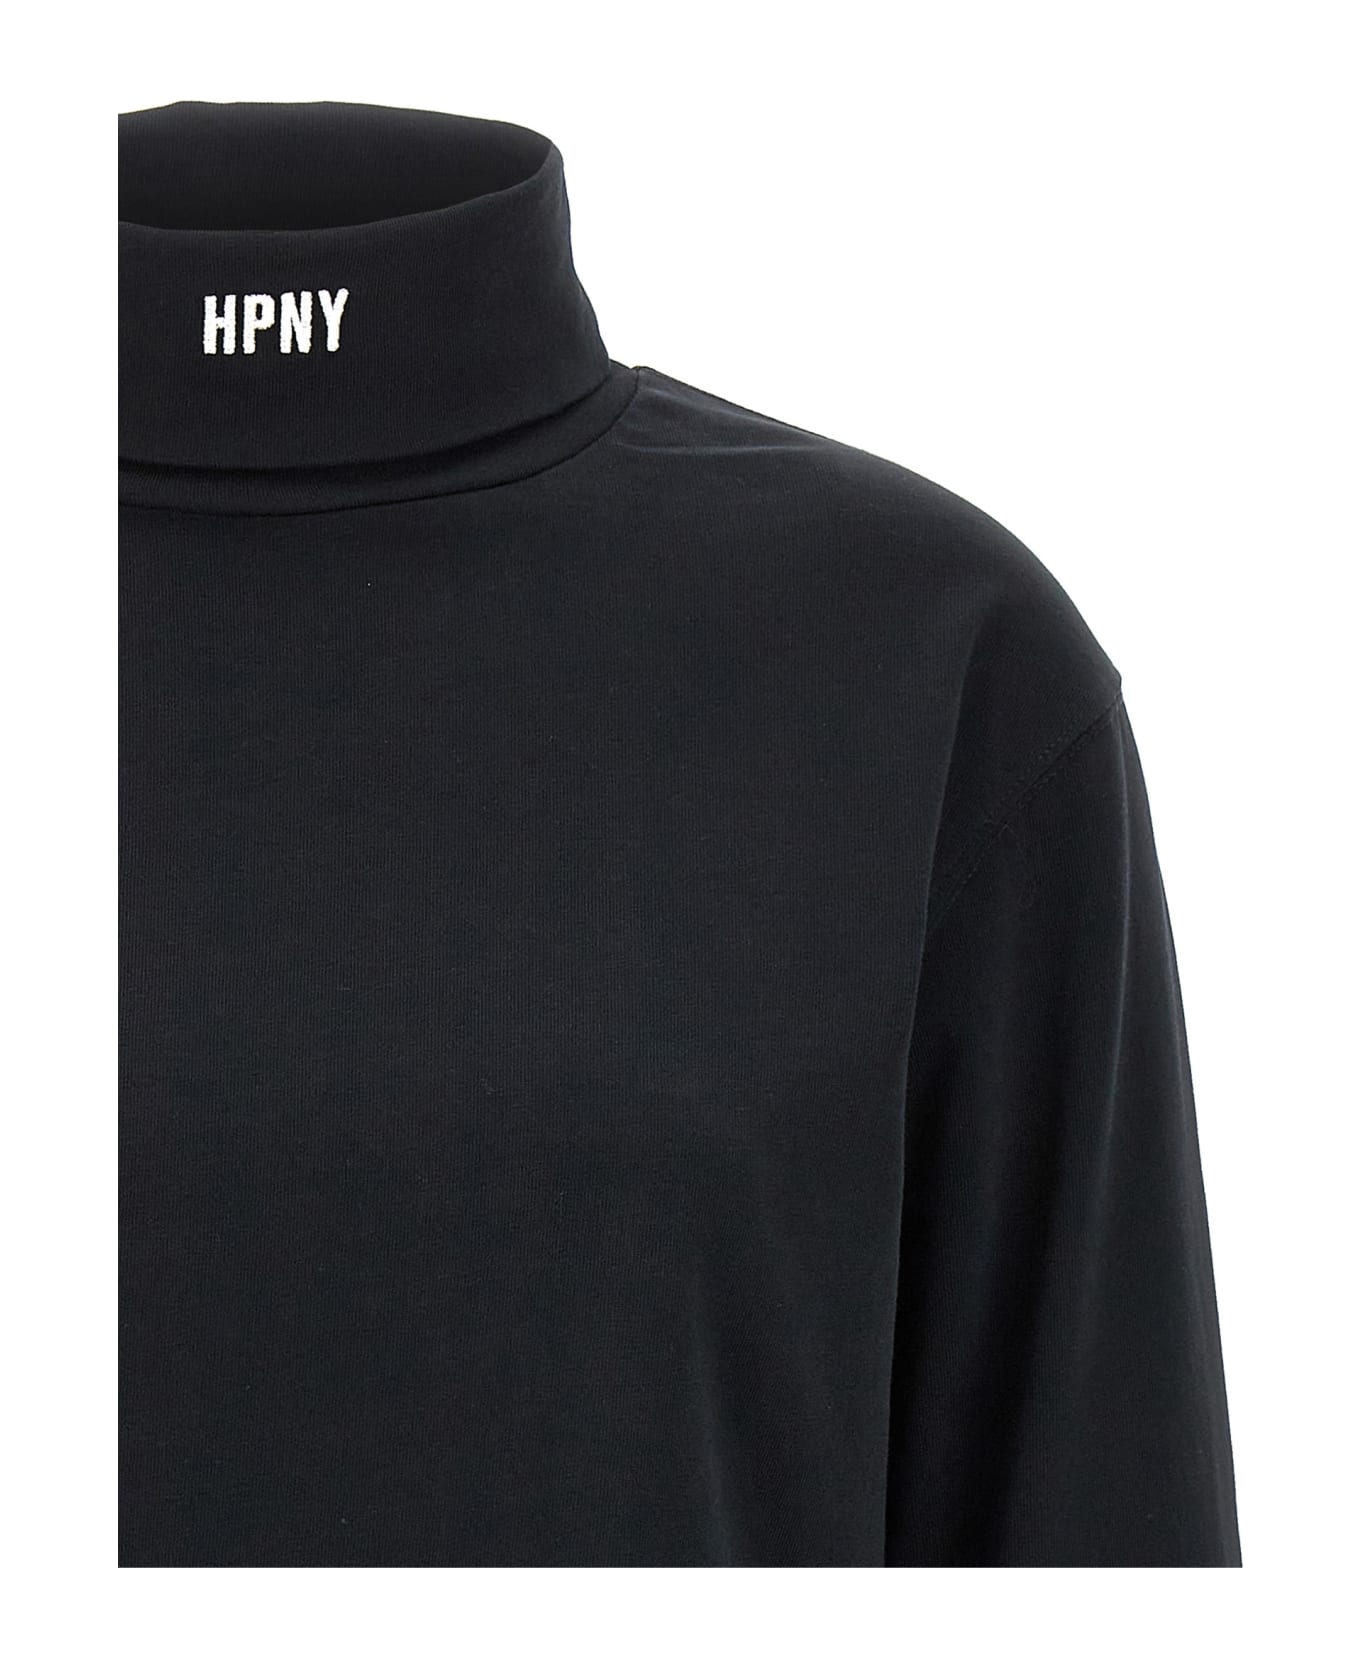 HERON PRESTON 'hpny' T-shirt - Black  